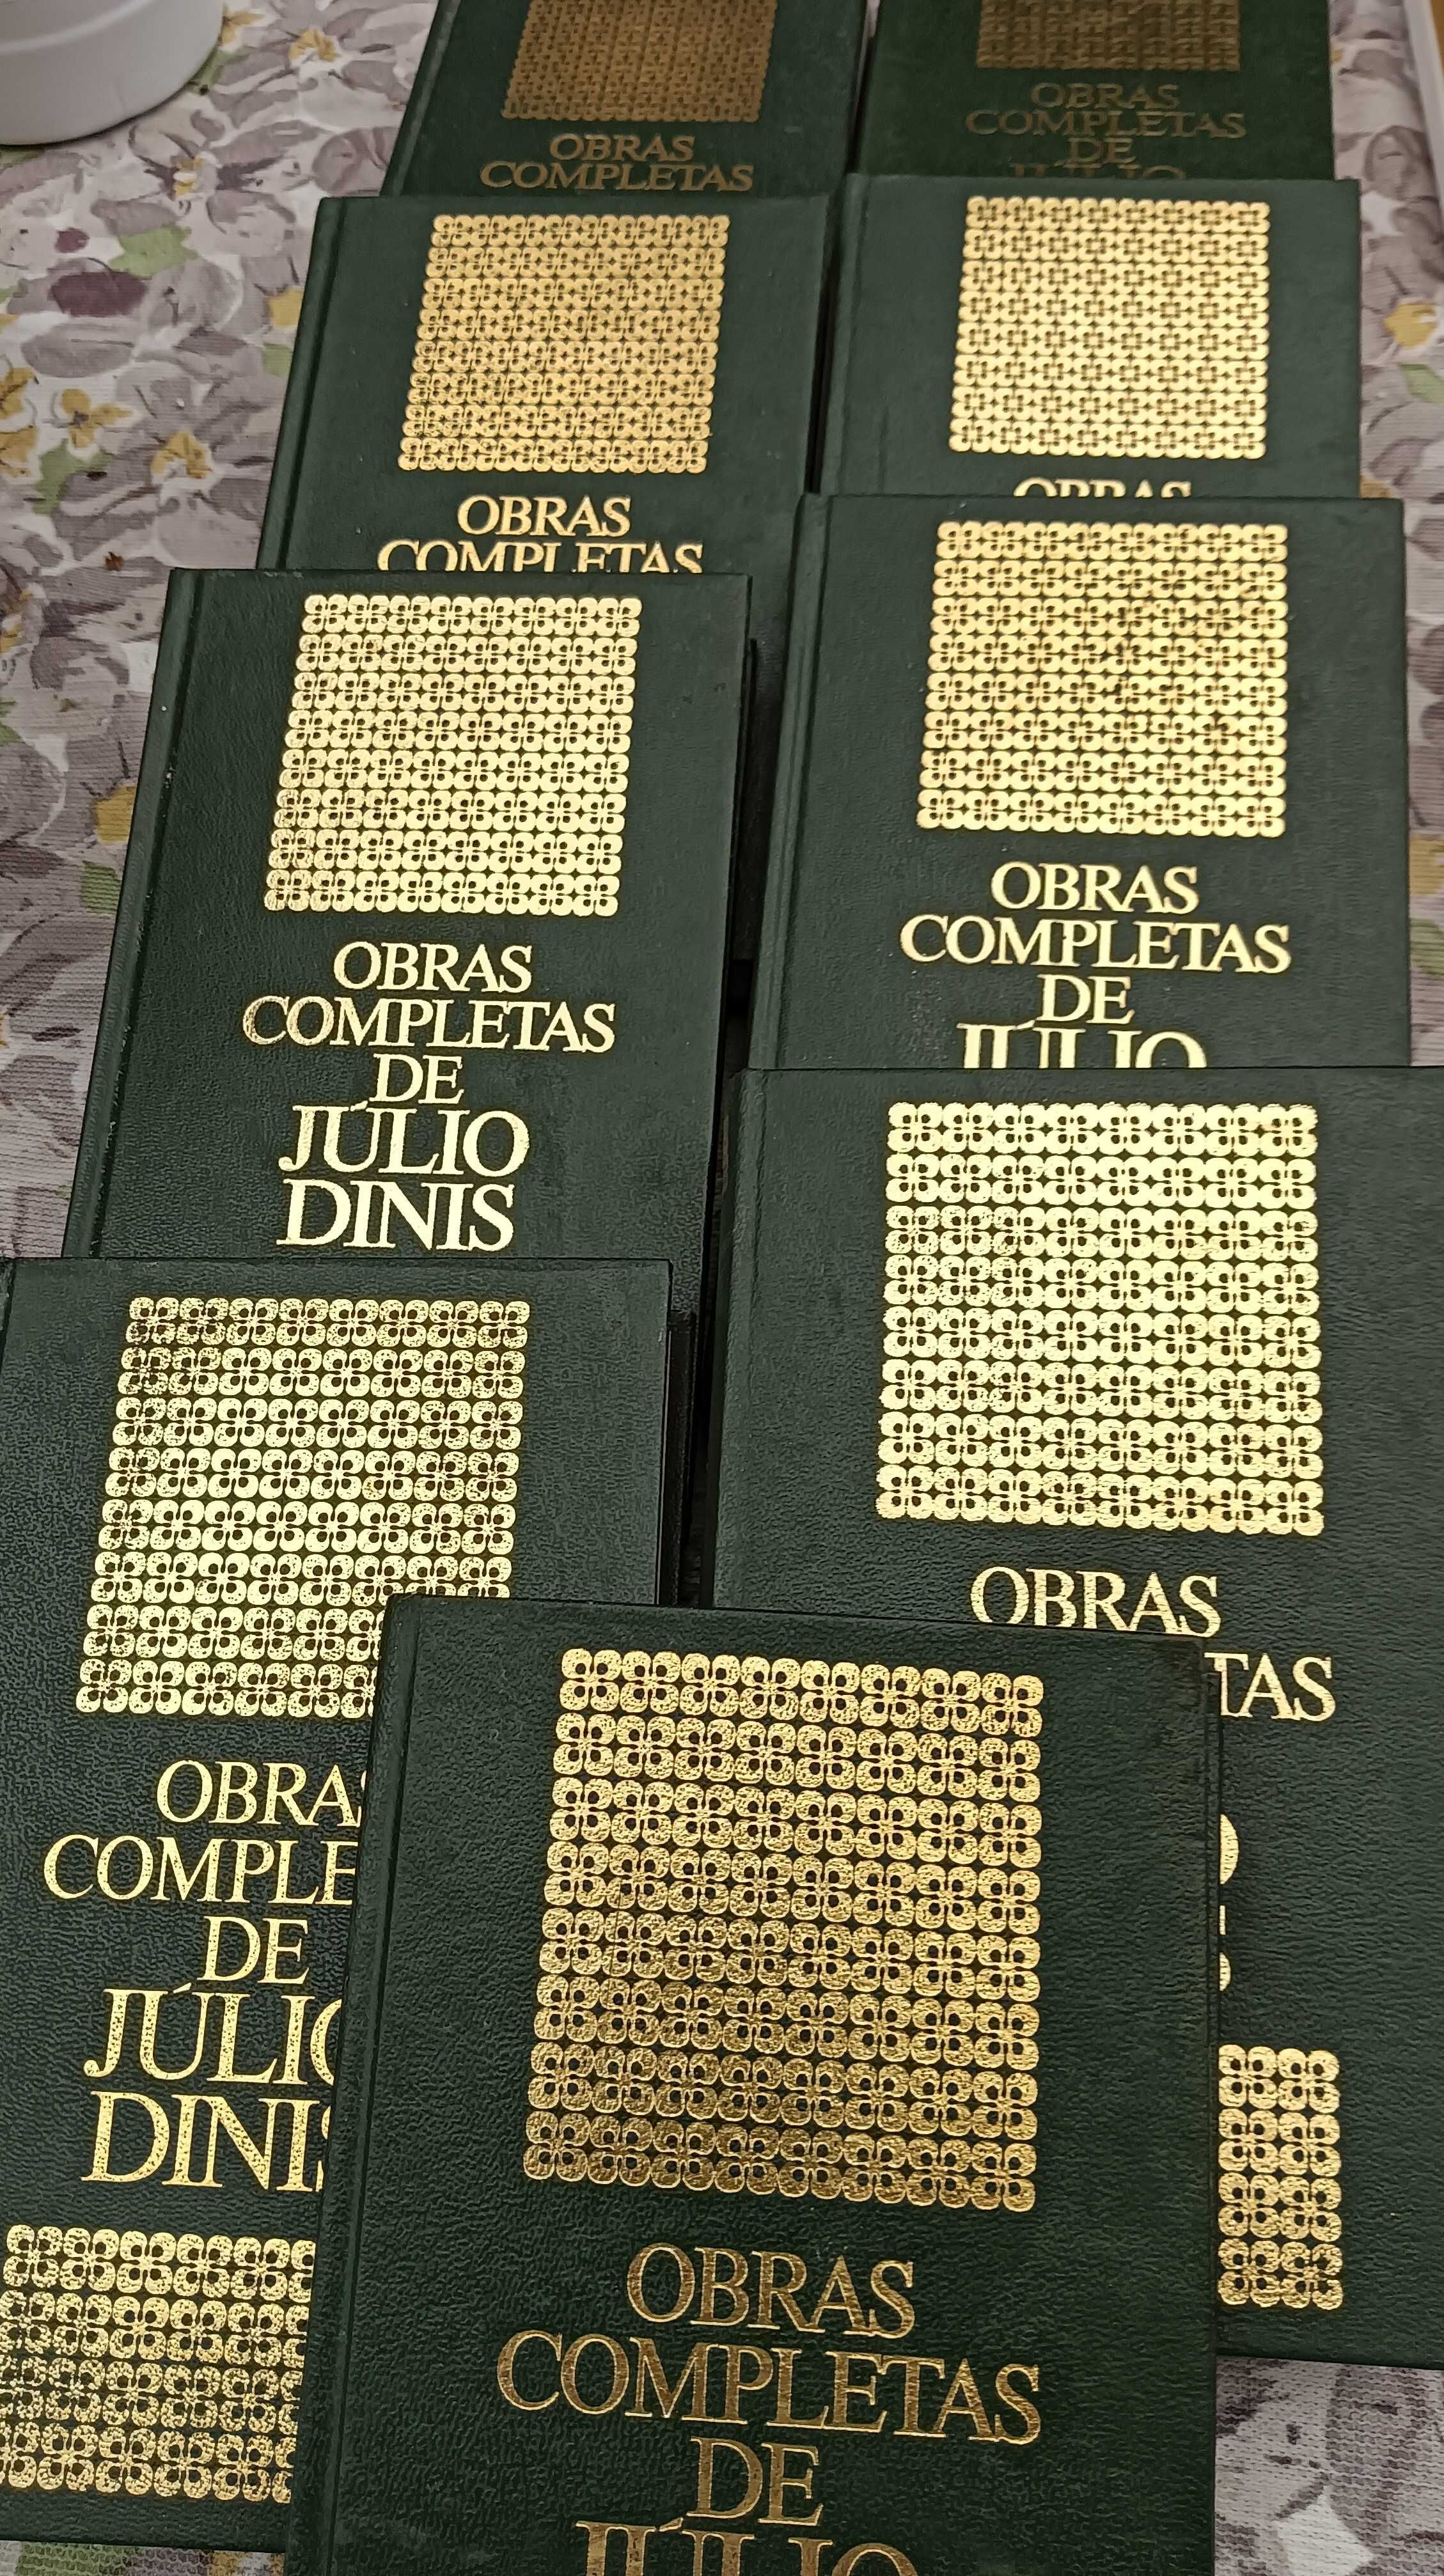 Coleção de livros de Julio Dinis